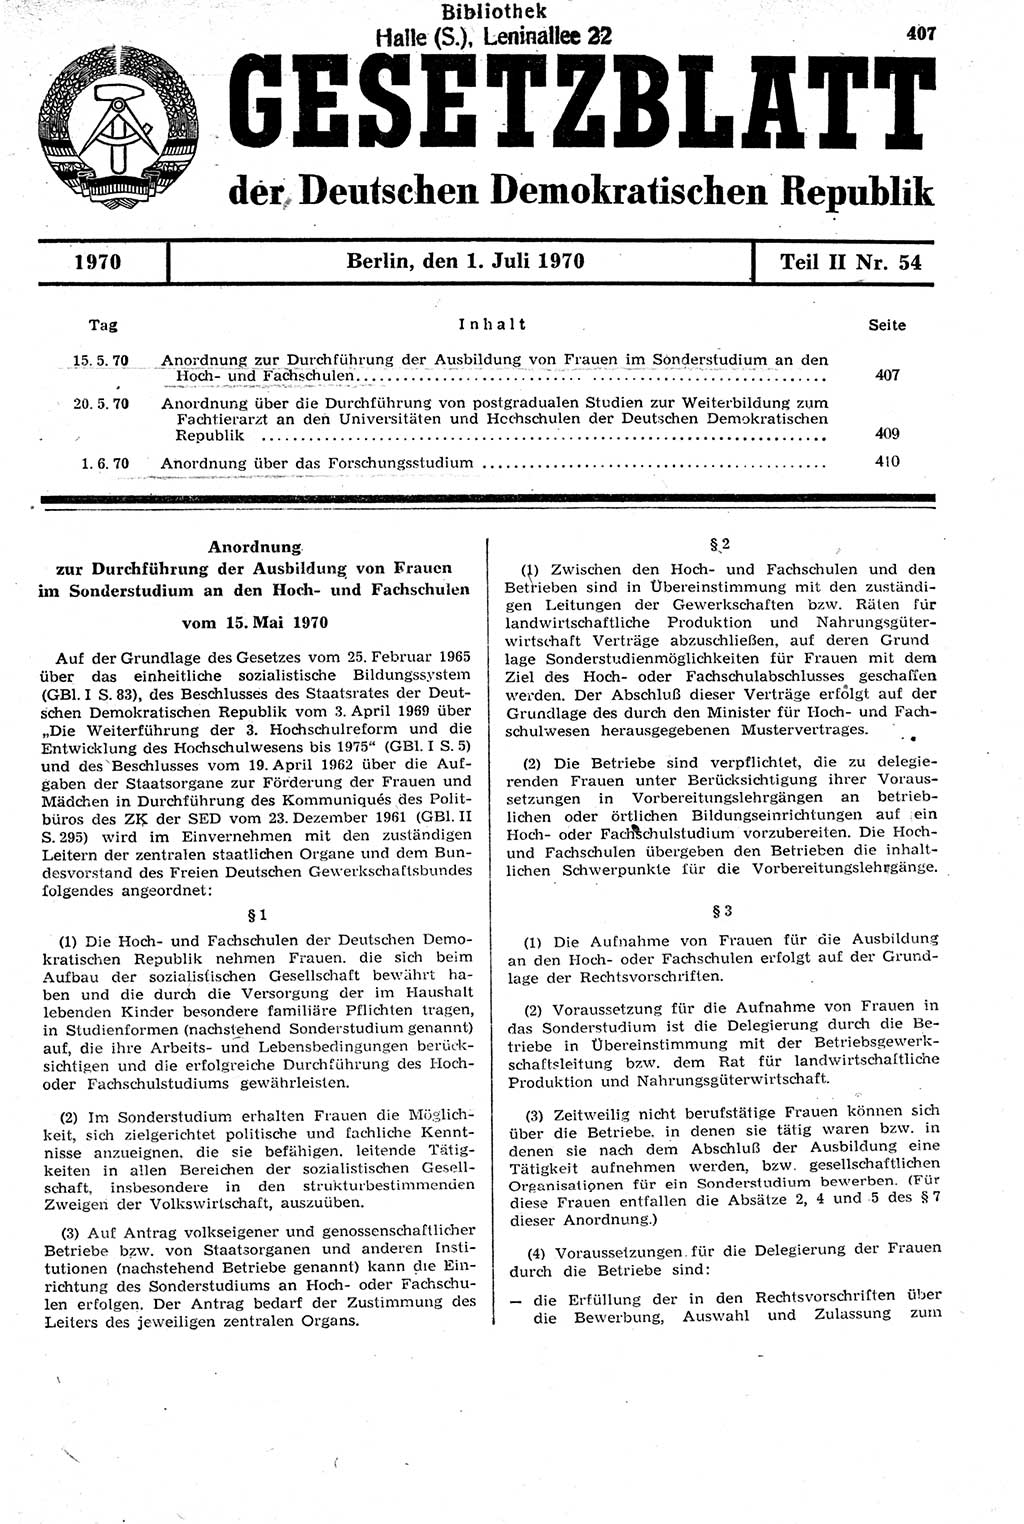 Gesetzblatt (GBl.) der Deutschen Demokratischen Republik (DDR) Teil ⅠⅠ 1970, Seite 407 (GBl. DDR ⅠⅠ 1970, S. 407)